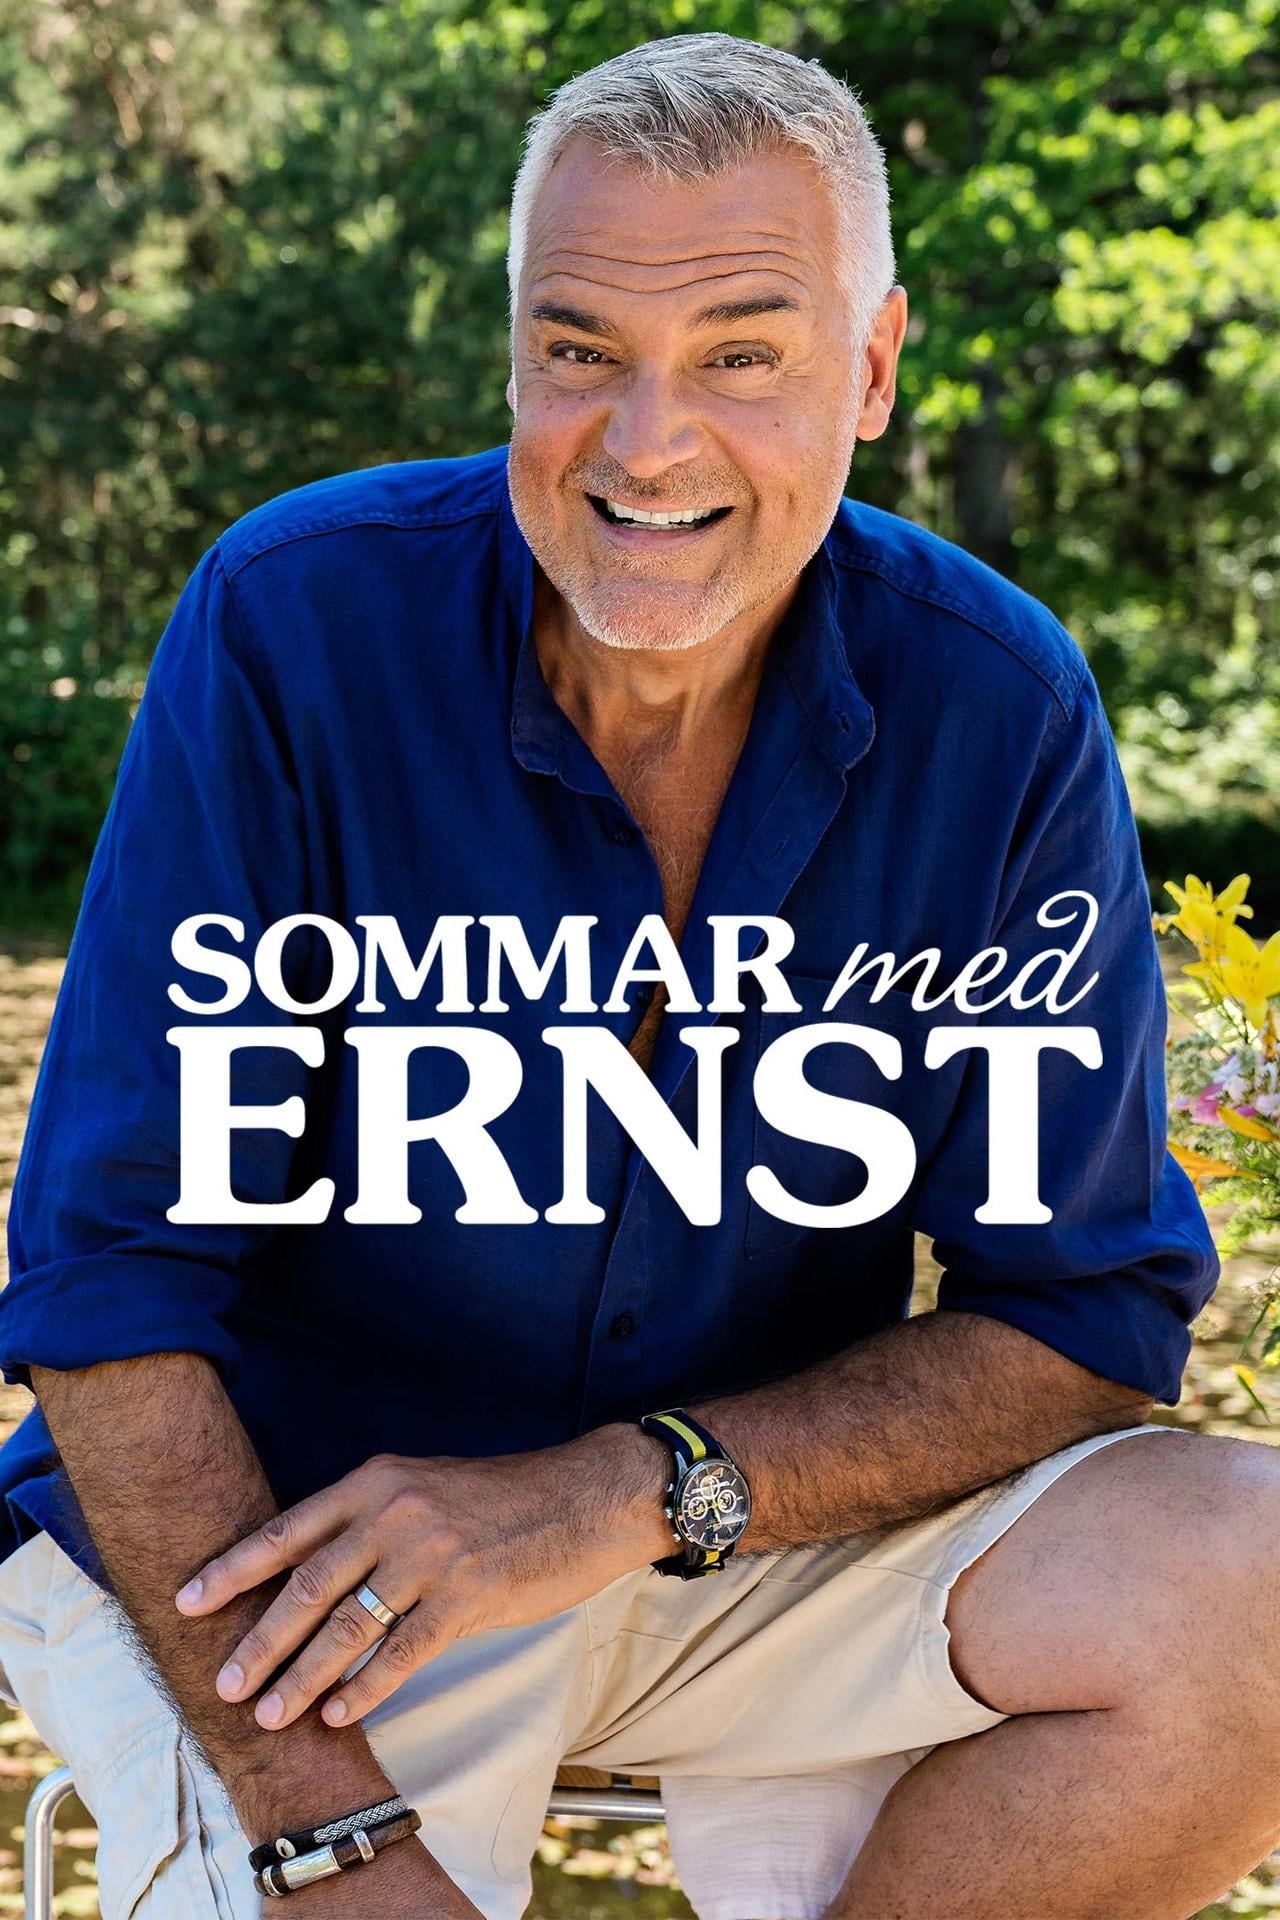 Sommar med Ernst TV Shows About Home Improvement